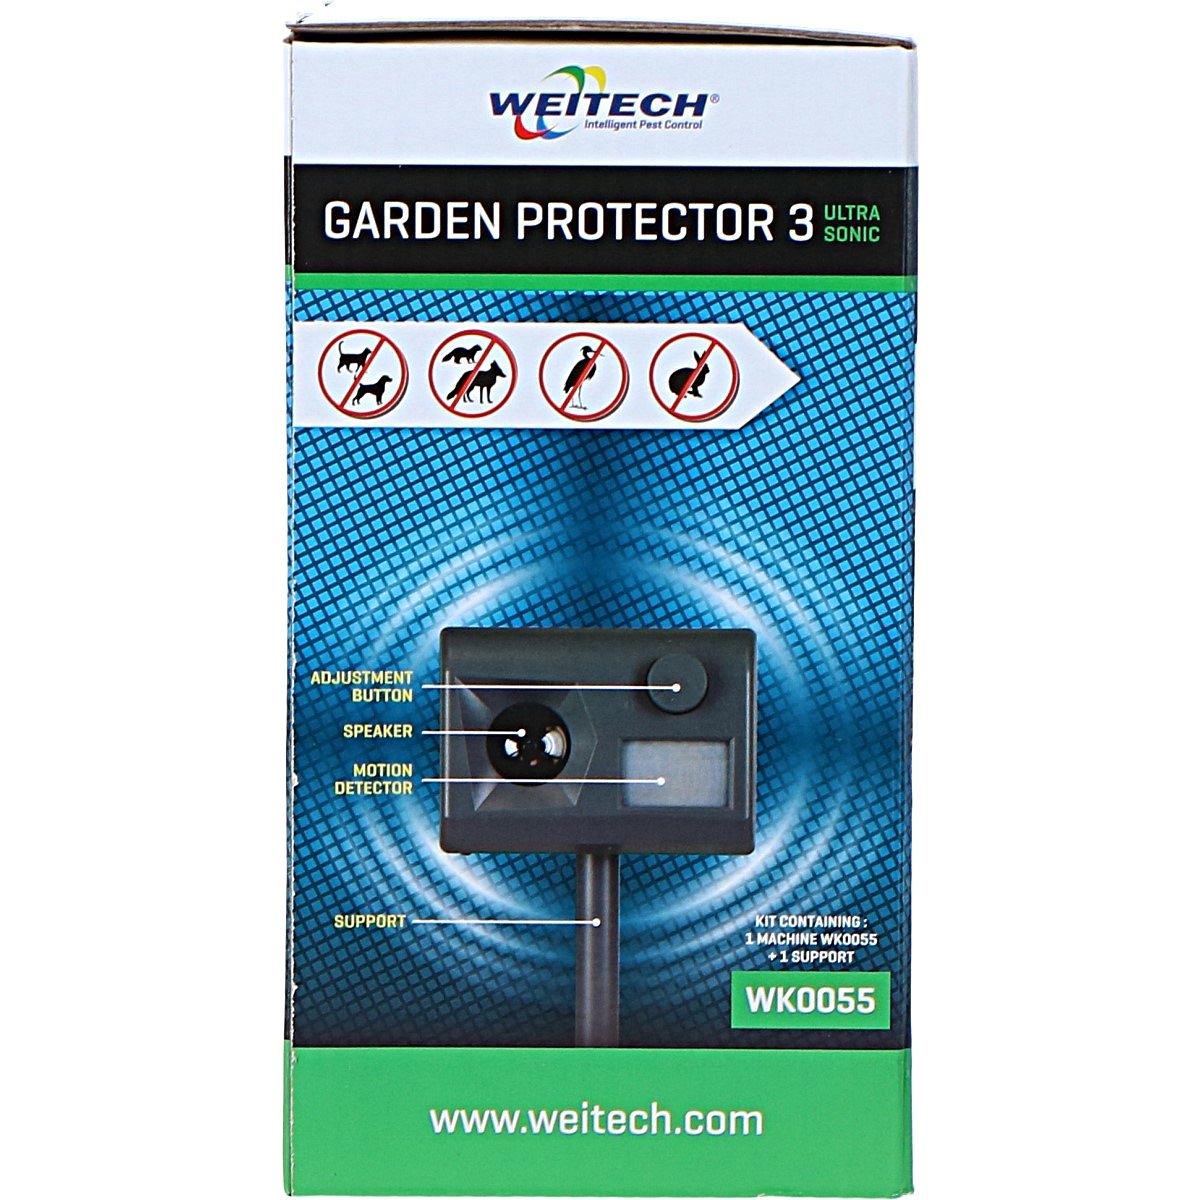 Weitech gardenprotector 3 WK0055